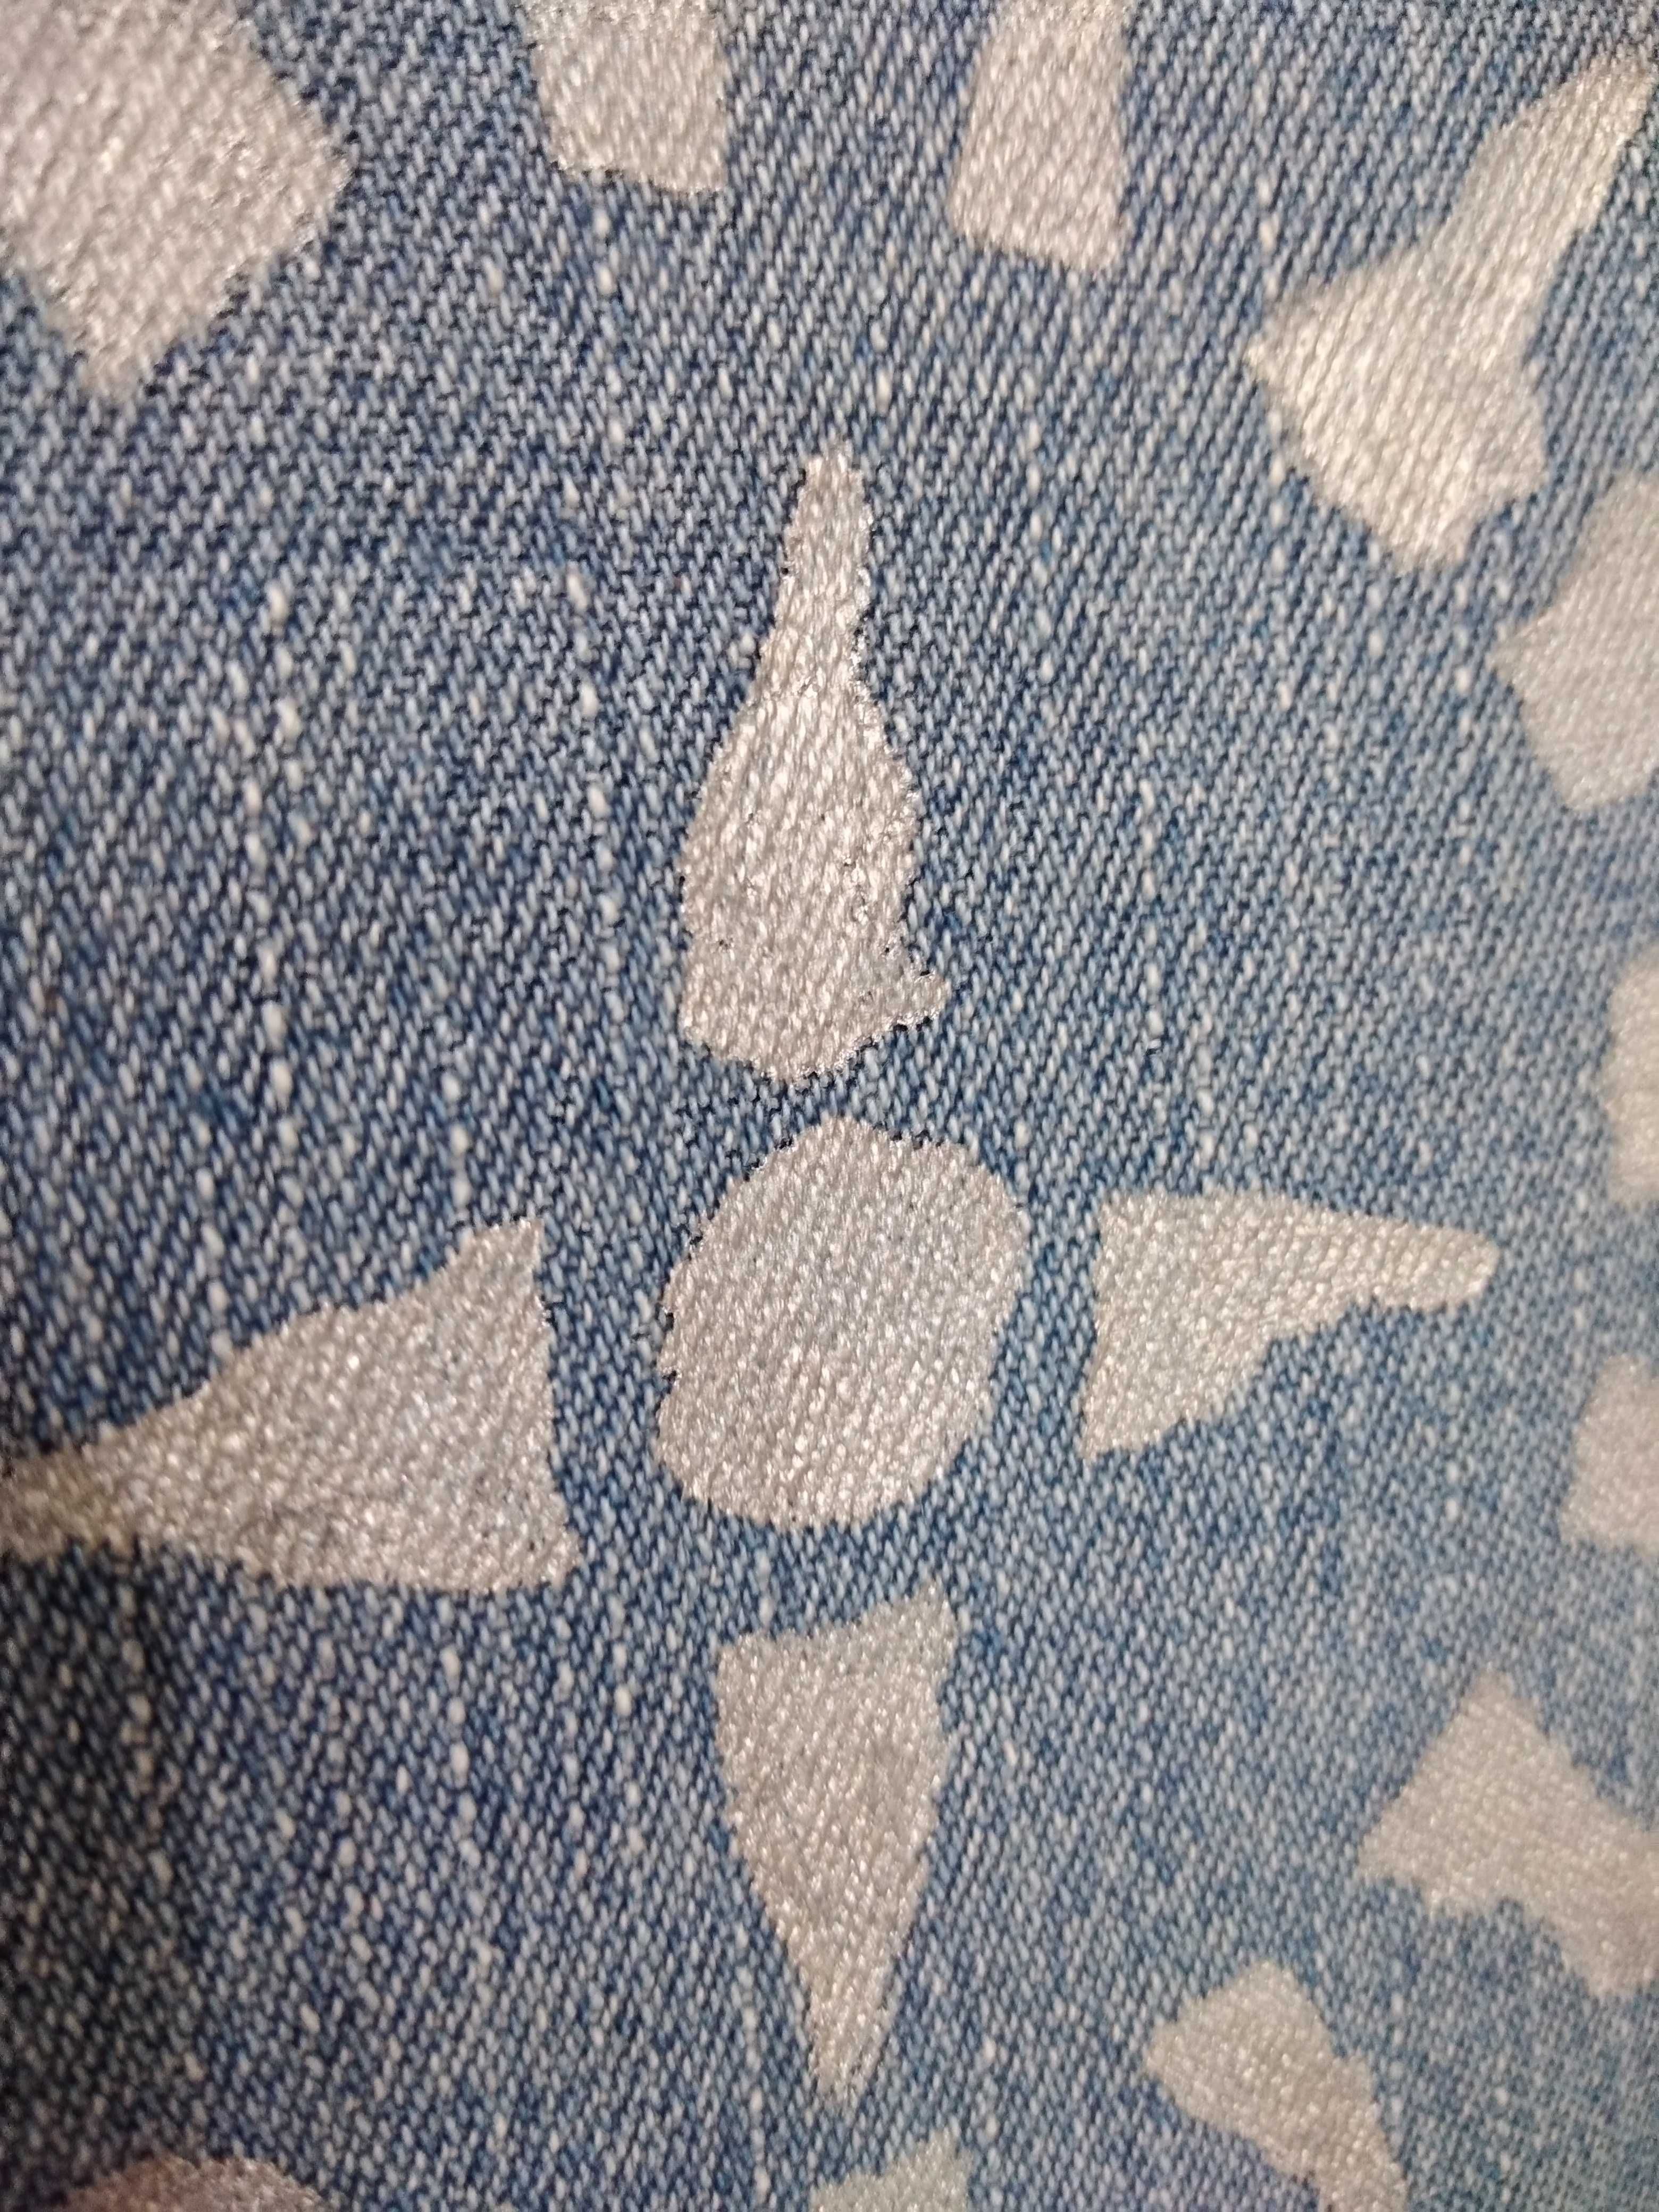 Kurtka jeansowa ręcznie malowana, sygnowana r M